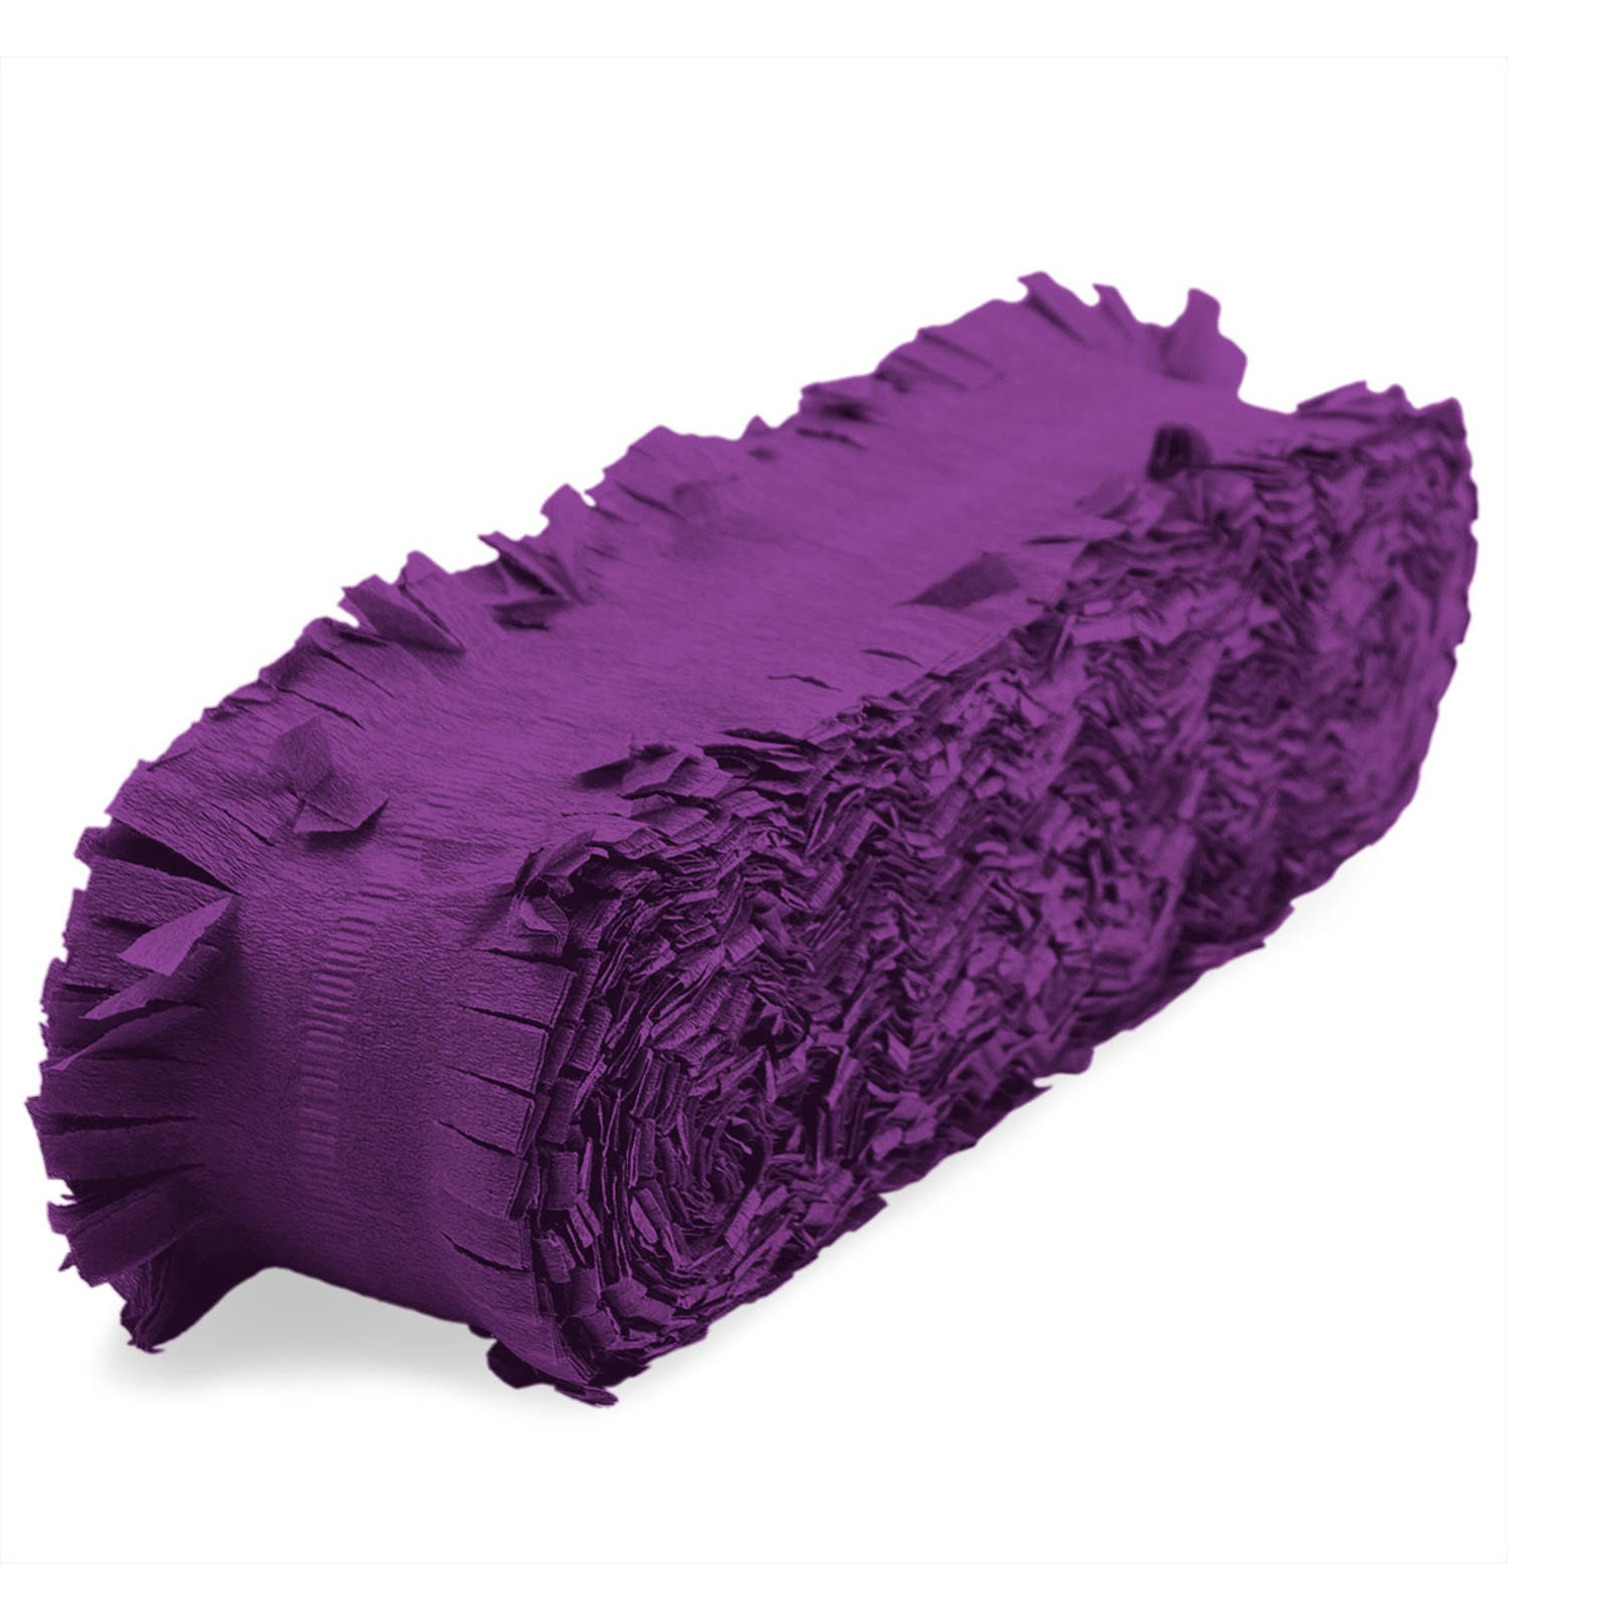 Feest/verjaardag versiering slingers paars 24 meter crepe papier